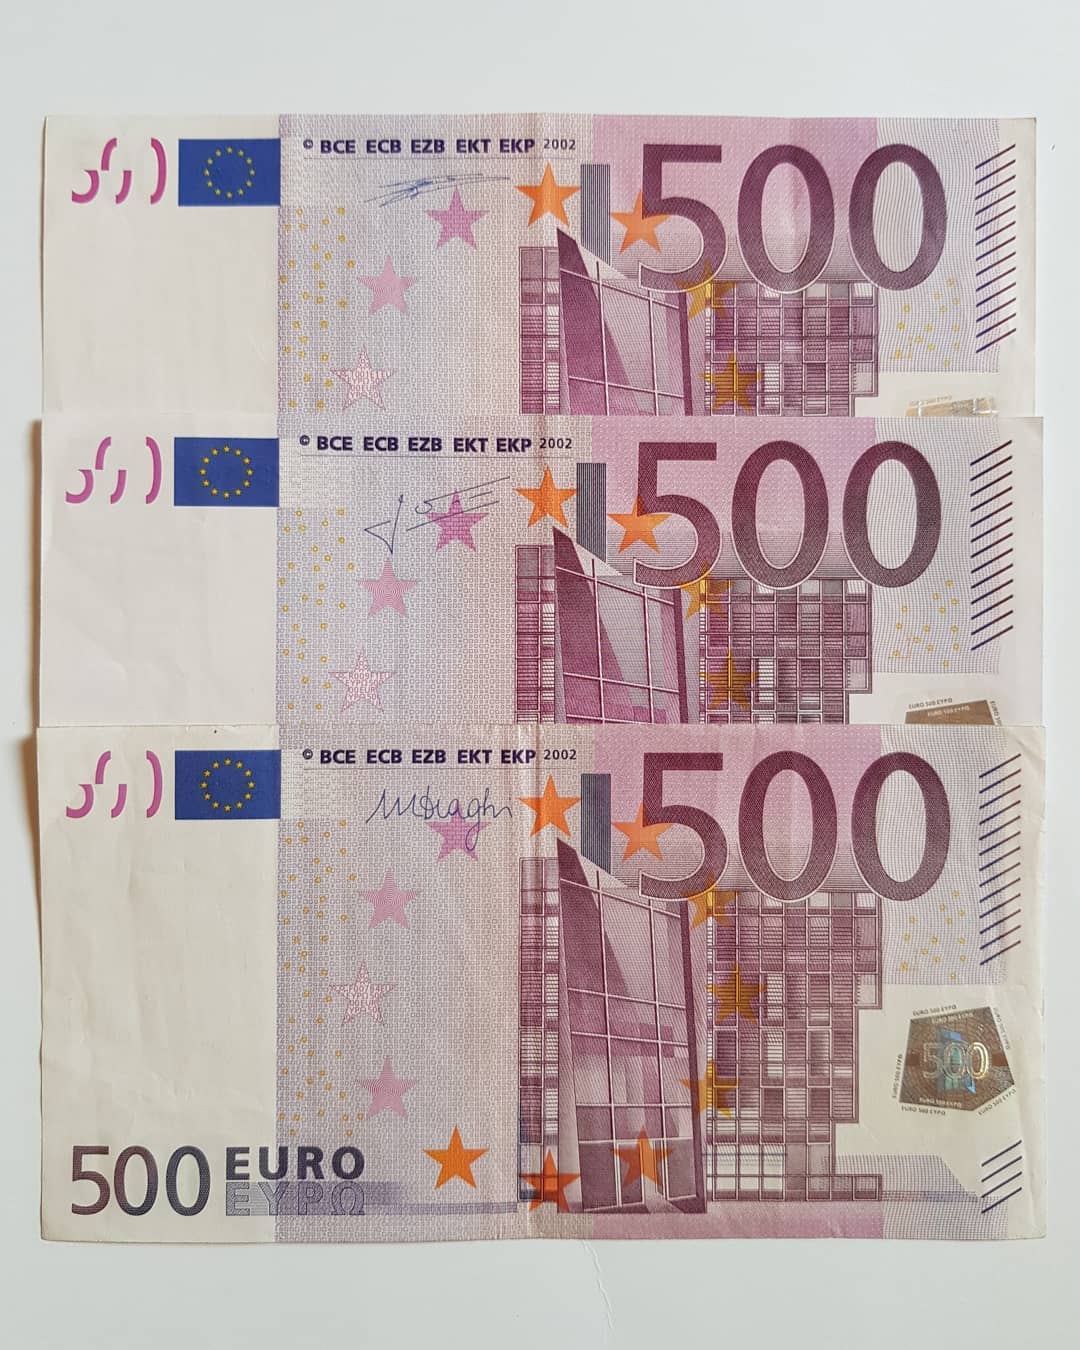 Acheter de faux euros en ligne